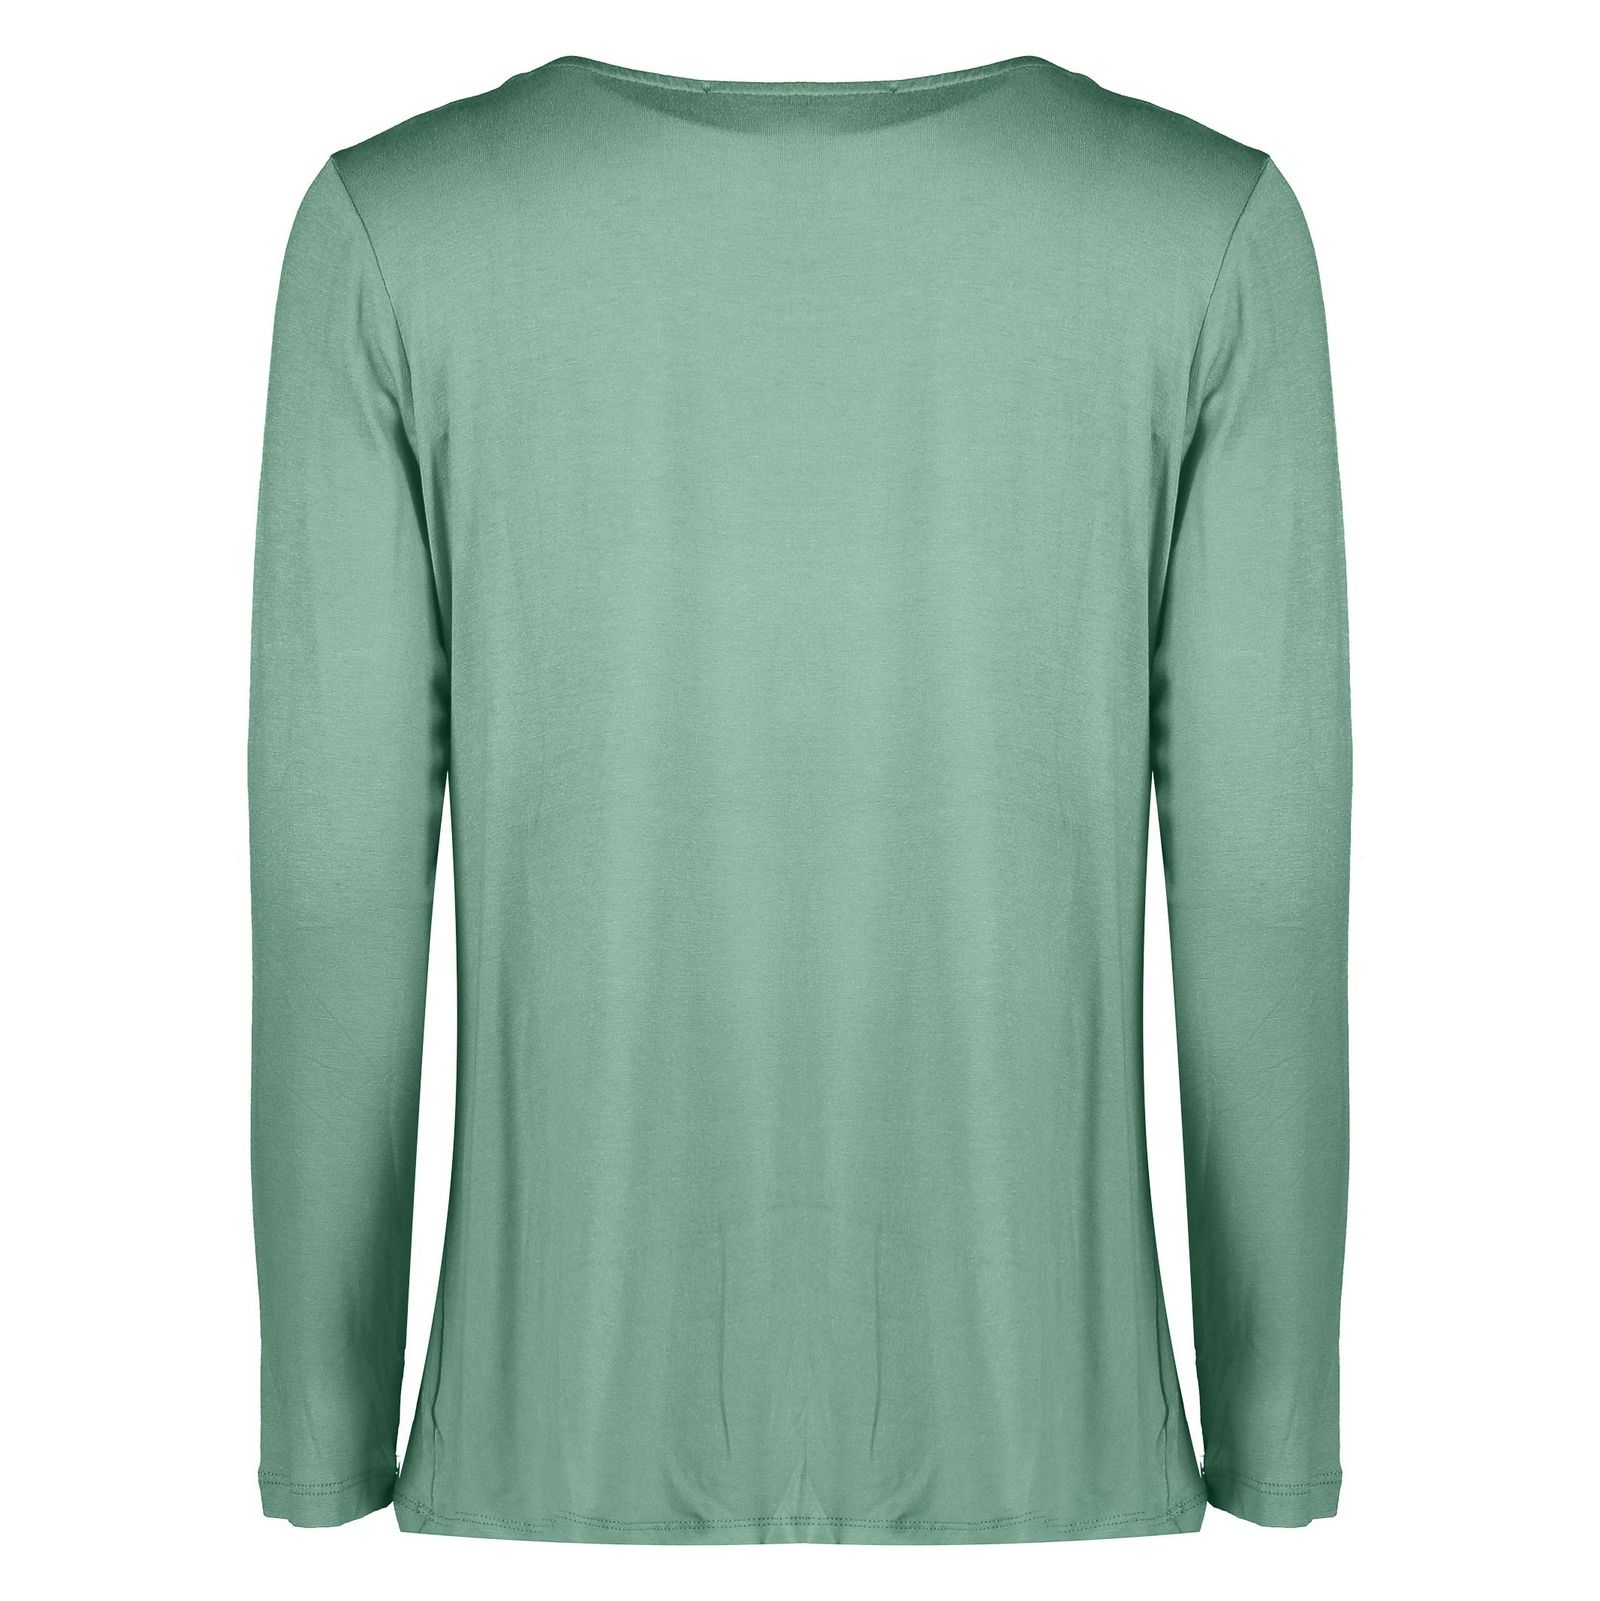 تی شرت آستین بلند زنانه - رامکات - سبز روشن - 3